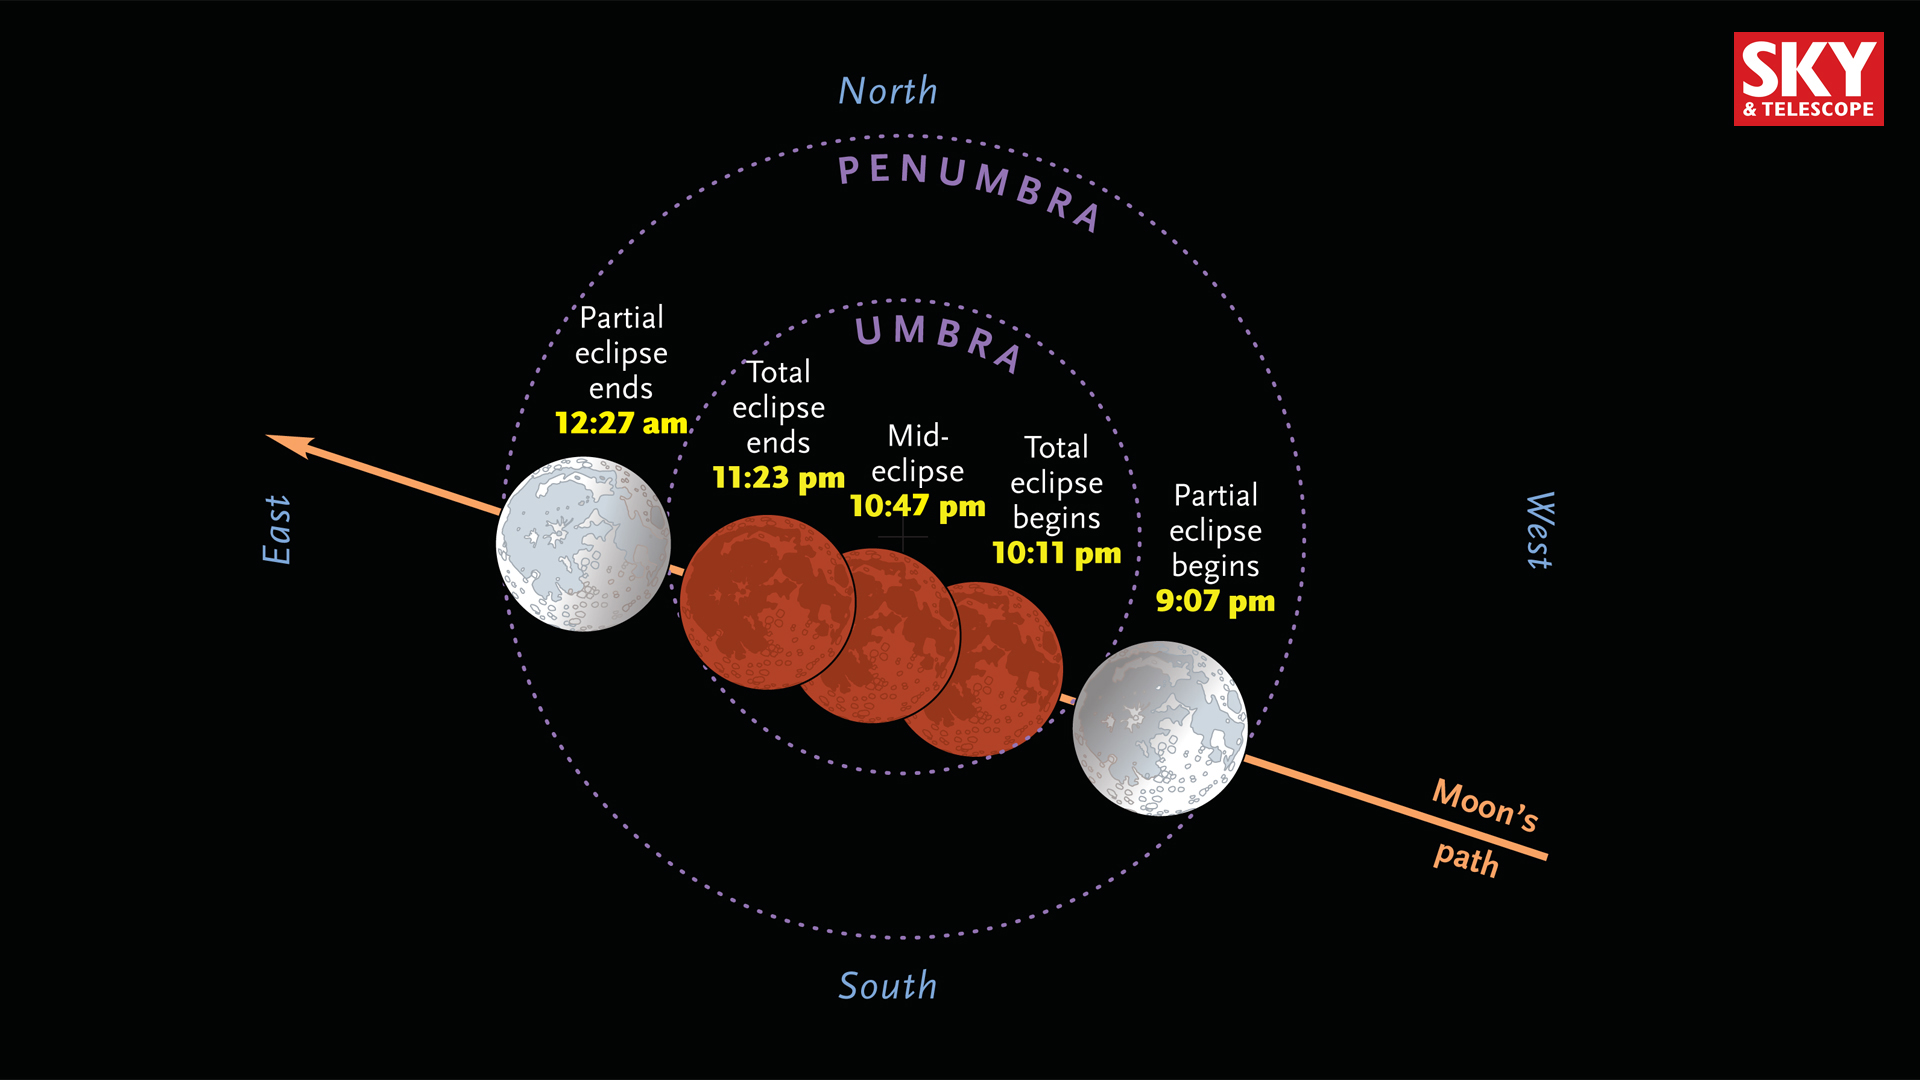 Total lunar eclipse on Sept. 27-28, 2015